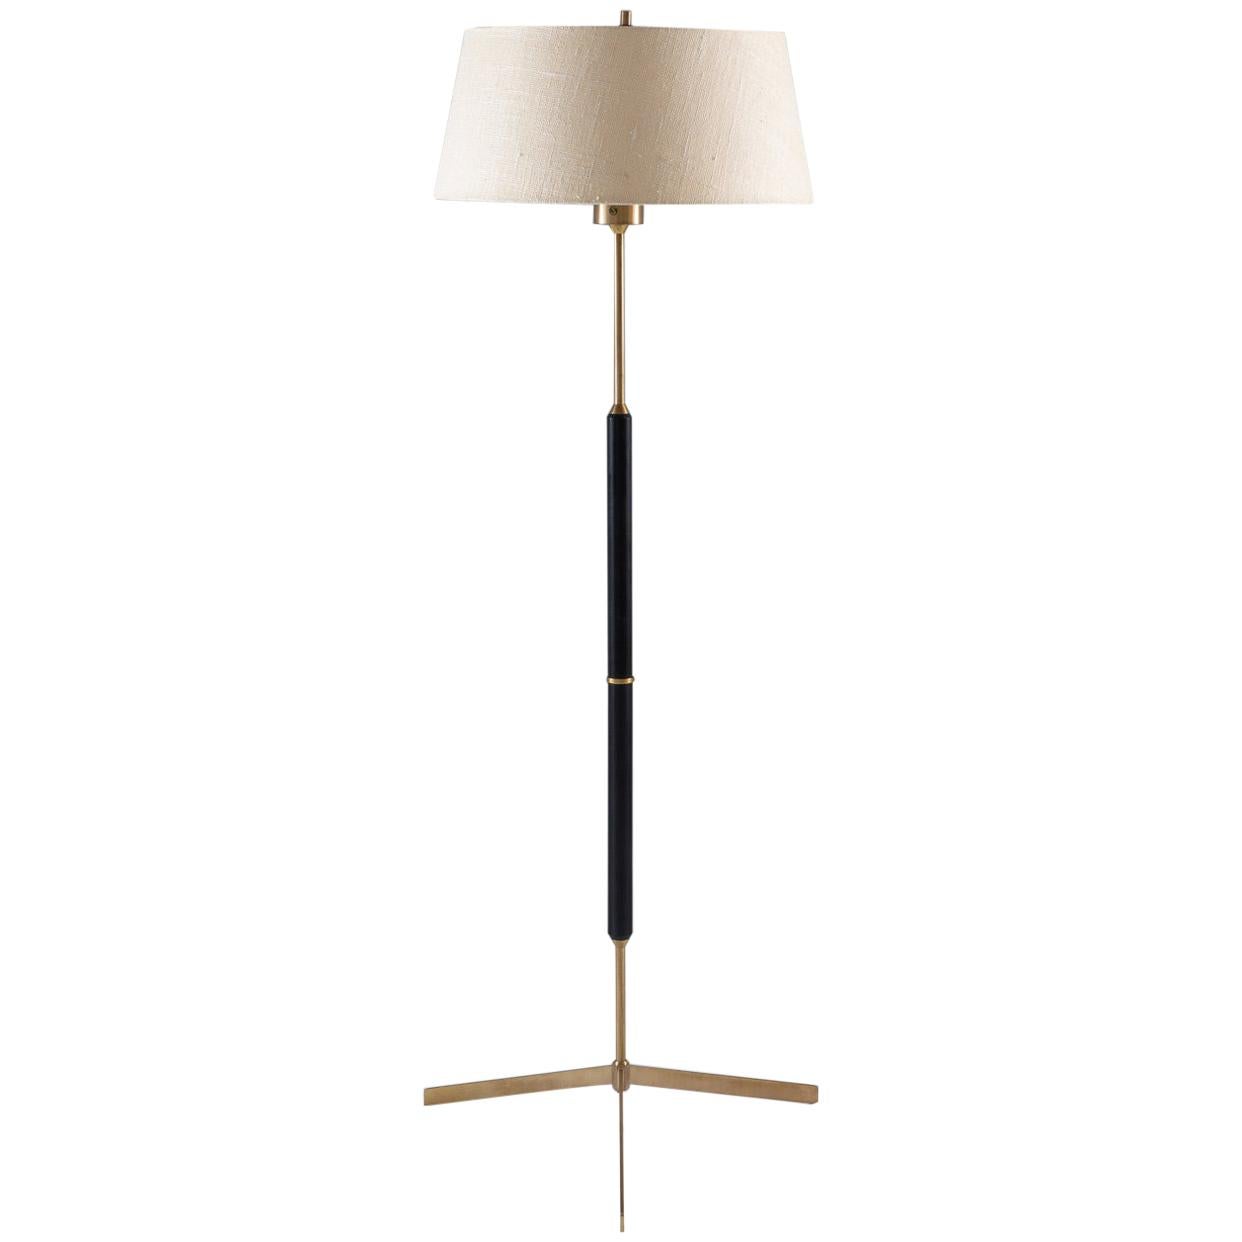 Scandinavian Midcentury Floor Lamp in Brass and Wood by Bergboms, Sweden